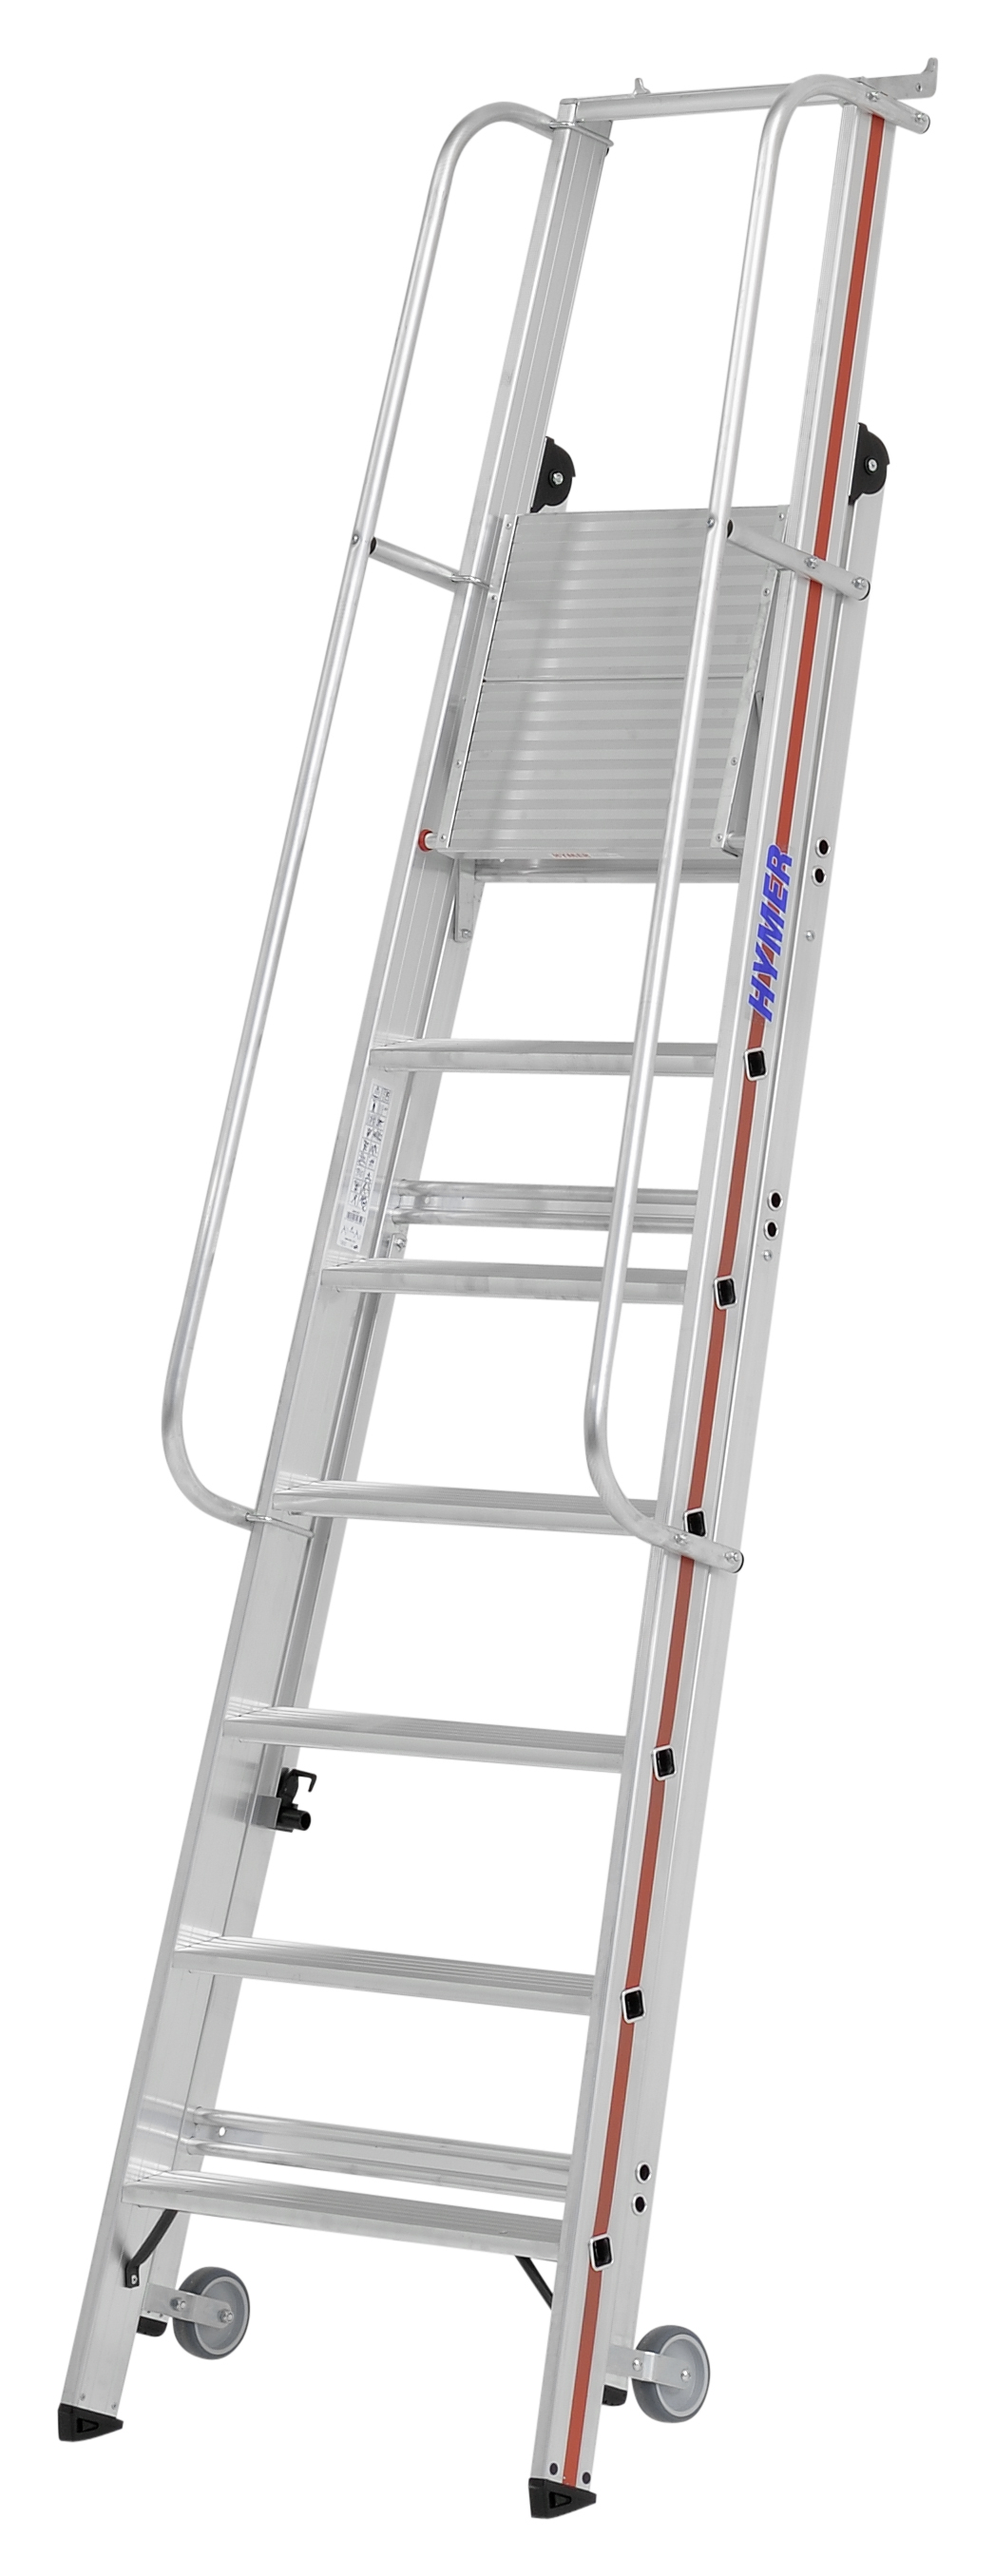 Plattformleiter mit Kipprollen und langem Handlauf - 4 Sprossen/Stufen